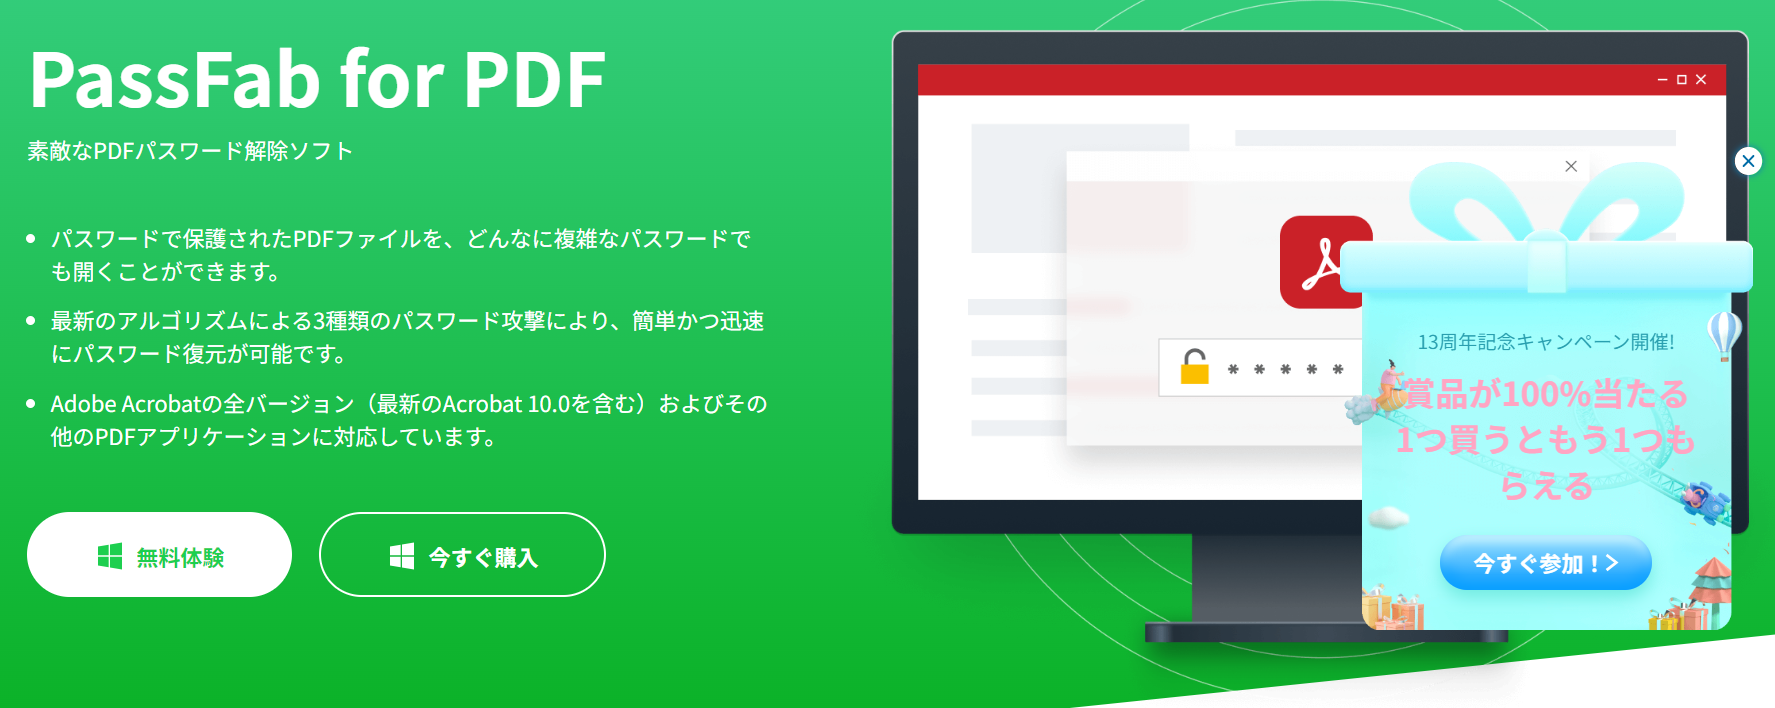 release-pdf-password